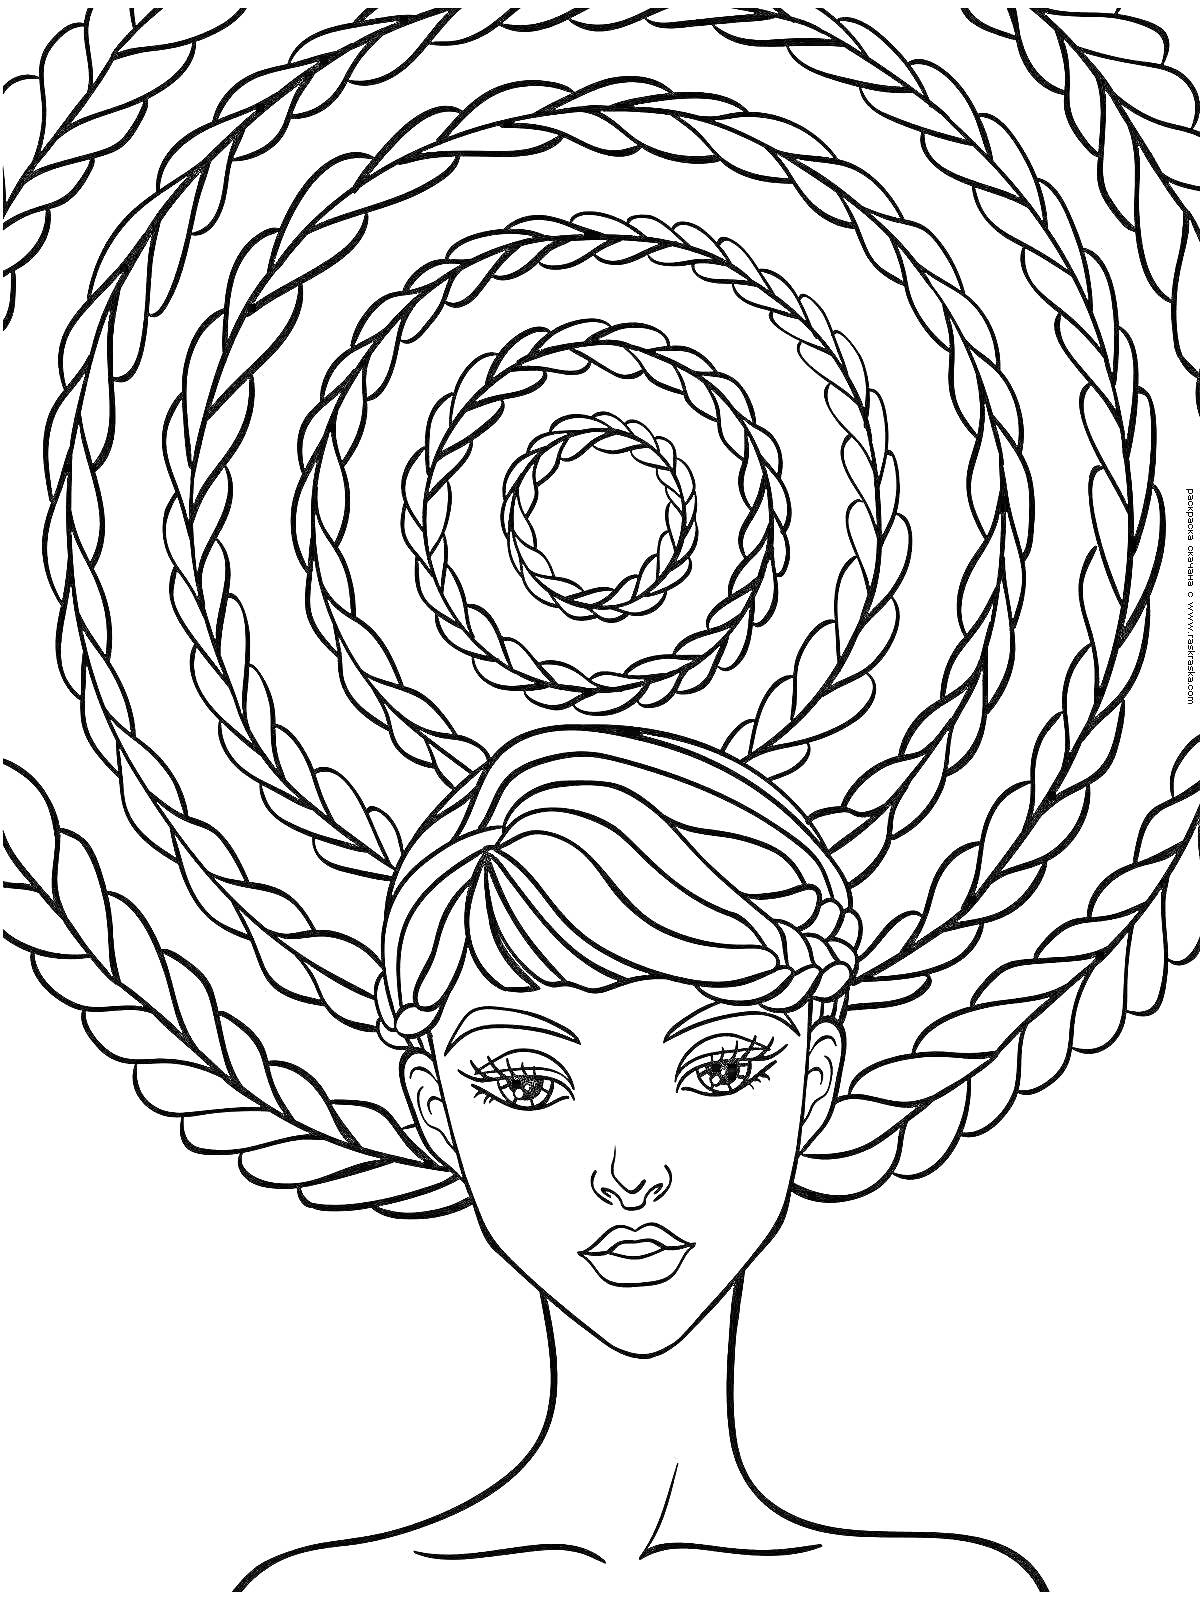 Раскраска Девочка с косичками и круговыми узорами из косичек